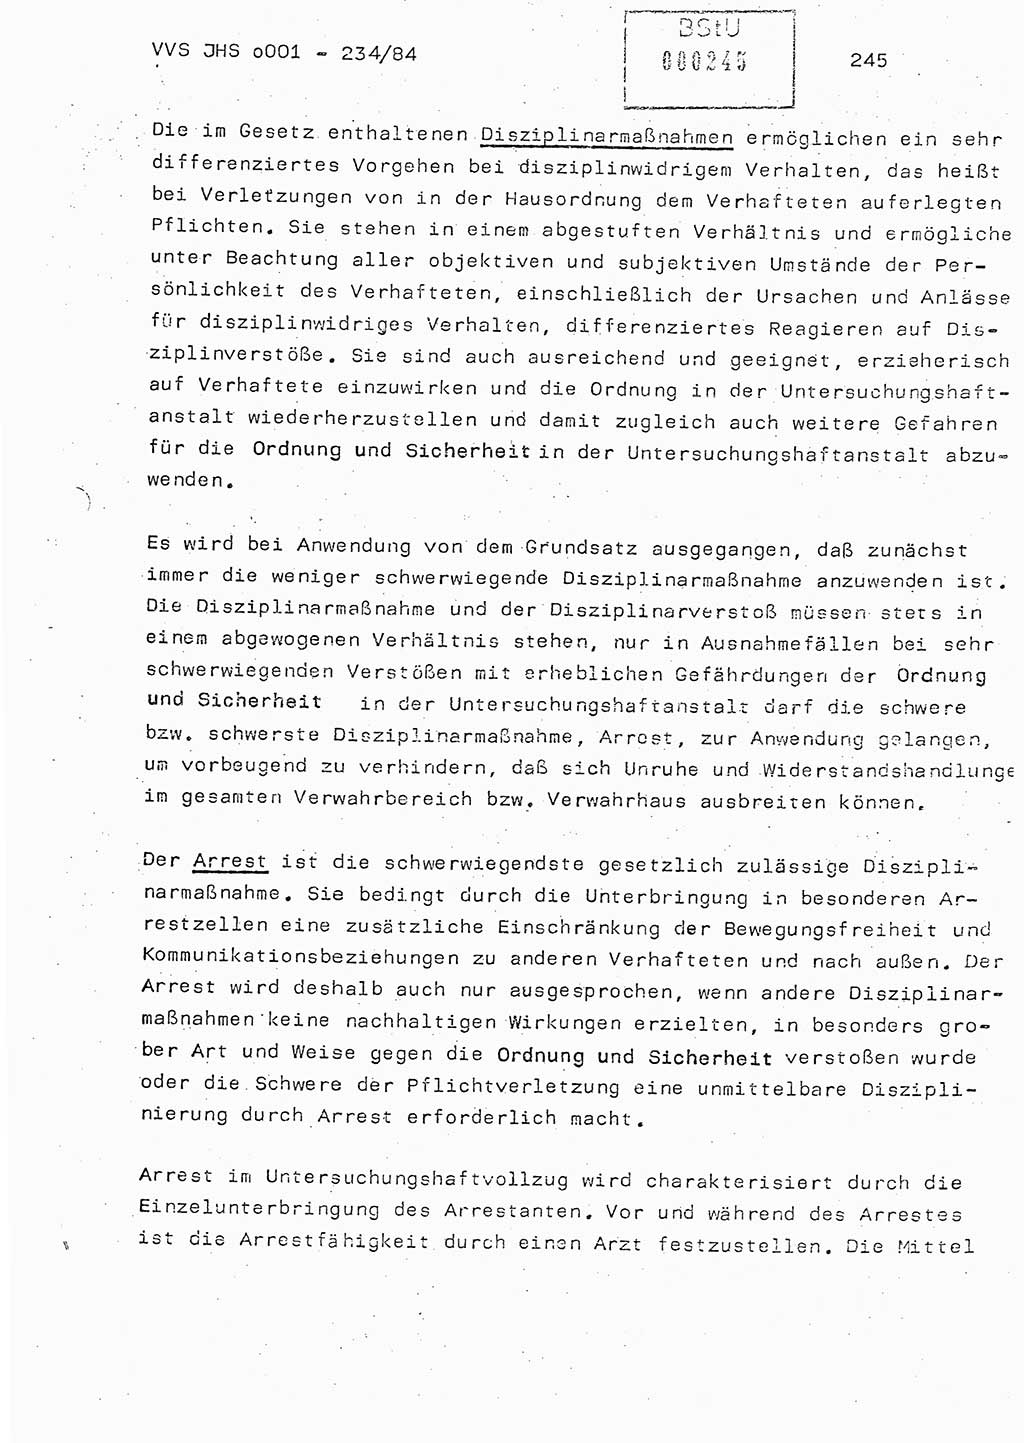 Dissertation Oberst Siegfried Rataizick (Abt. ⅩⅣ), Oberstleutnant Volkmar Heinz (Abt. ⅩⅣ), Oberstleutnant Werner Stein (HA Ⅸ), Hauptmann Heinz Conrad (JHS), Ministerium für Staatssicherheit (MfS) [Deutsche Demokratische Republik (DDR)], Juristische Hochschule (JHS), Vertrauliche Verschlußsache (VVS) o001-234/84, Potsdam 1984, Seite 245 (Diss. MfS DDR JHS VVS o001-234/84 1984, S. 245)